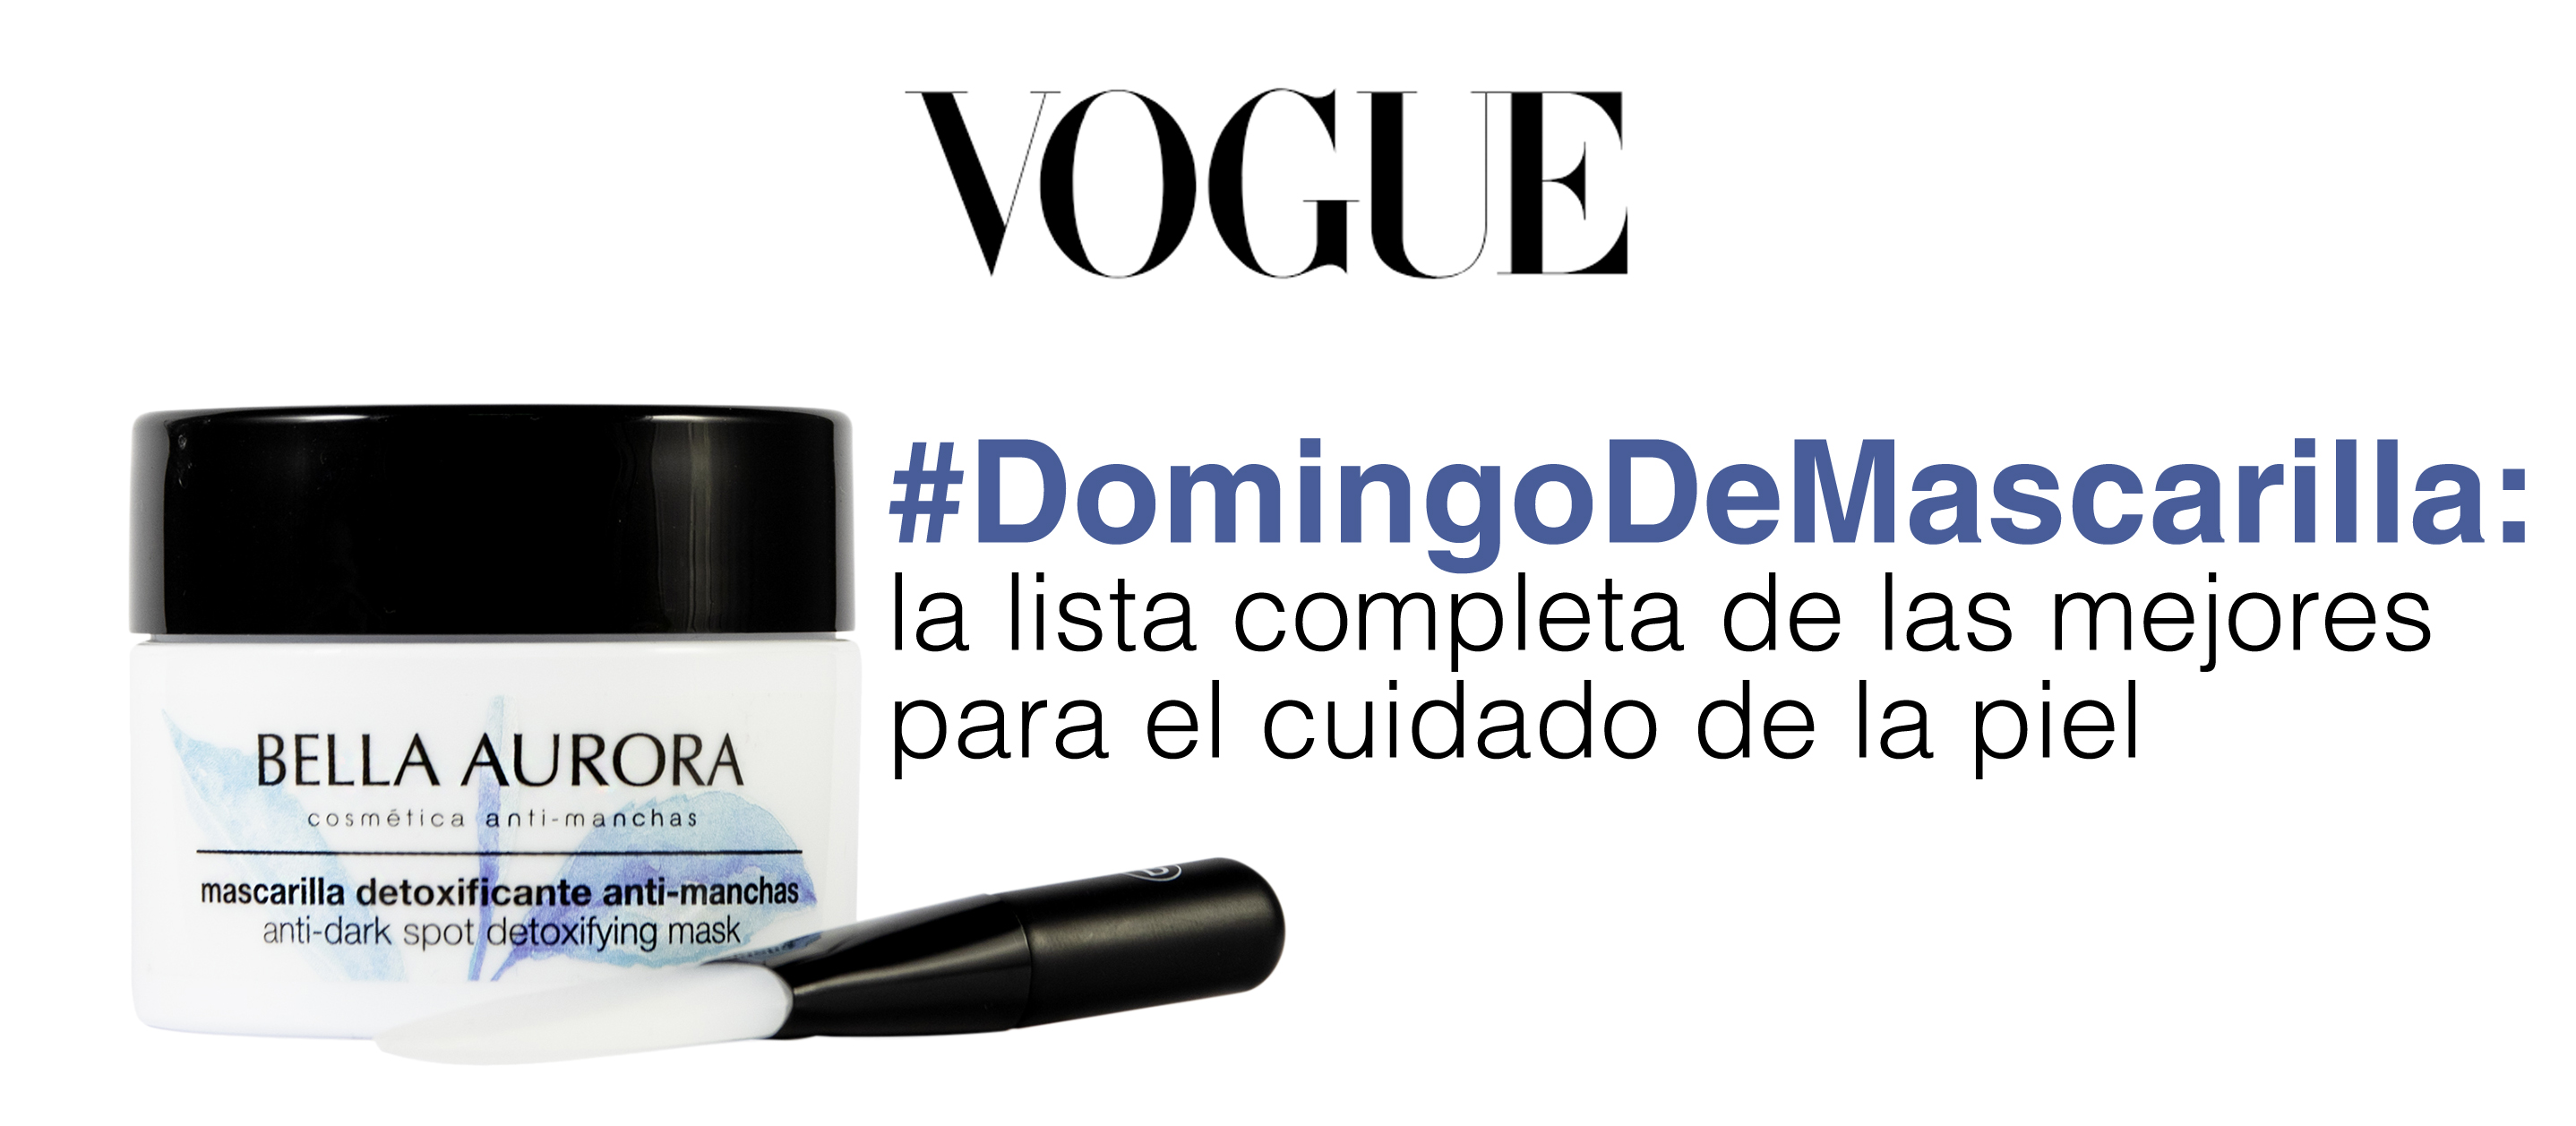 ¿El #DomingoDeMascarilla de Vogue? ¡Con Bella Aurora!